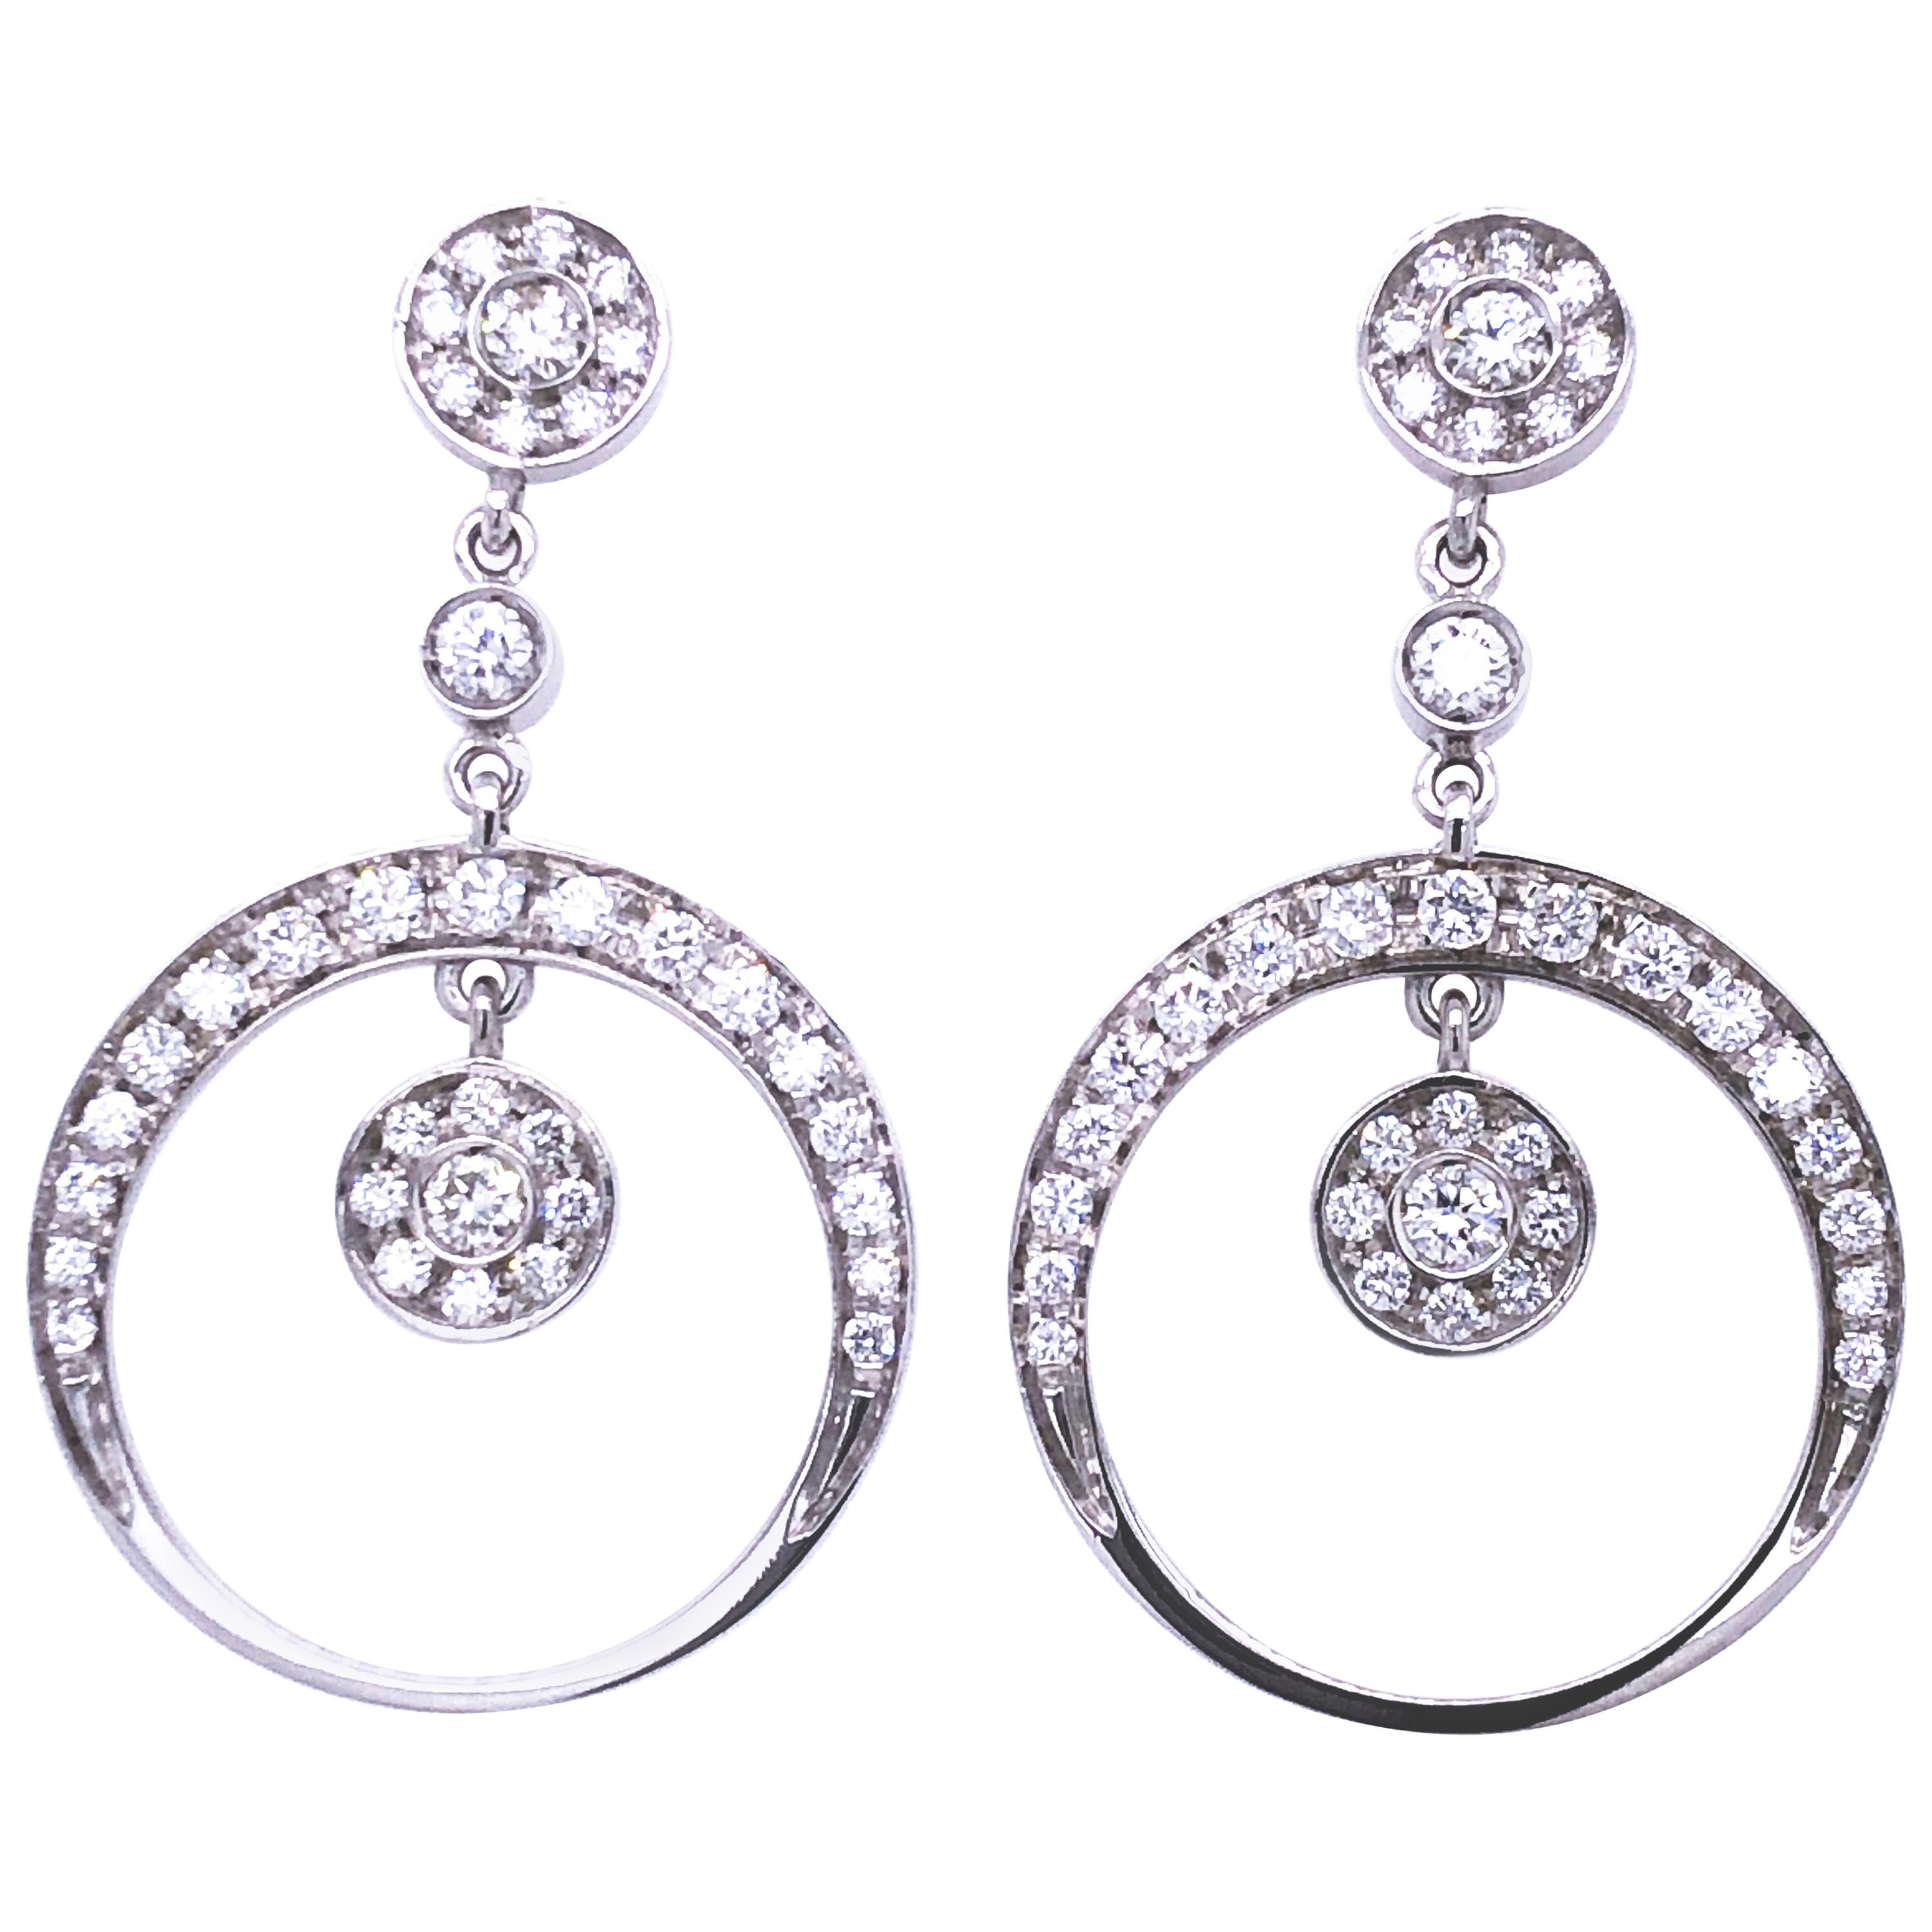 Berca Pendants d'oreilles en diamants blancs taille brillant 1,55 carat